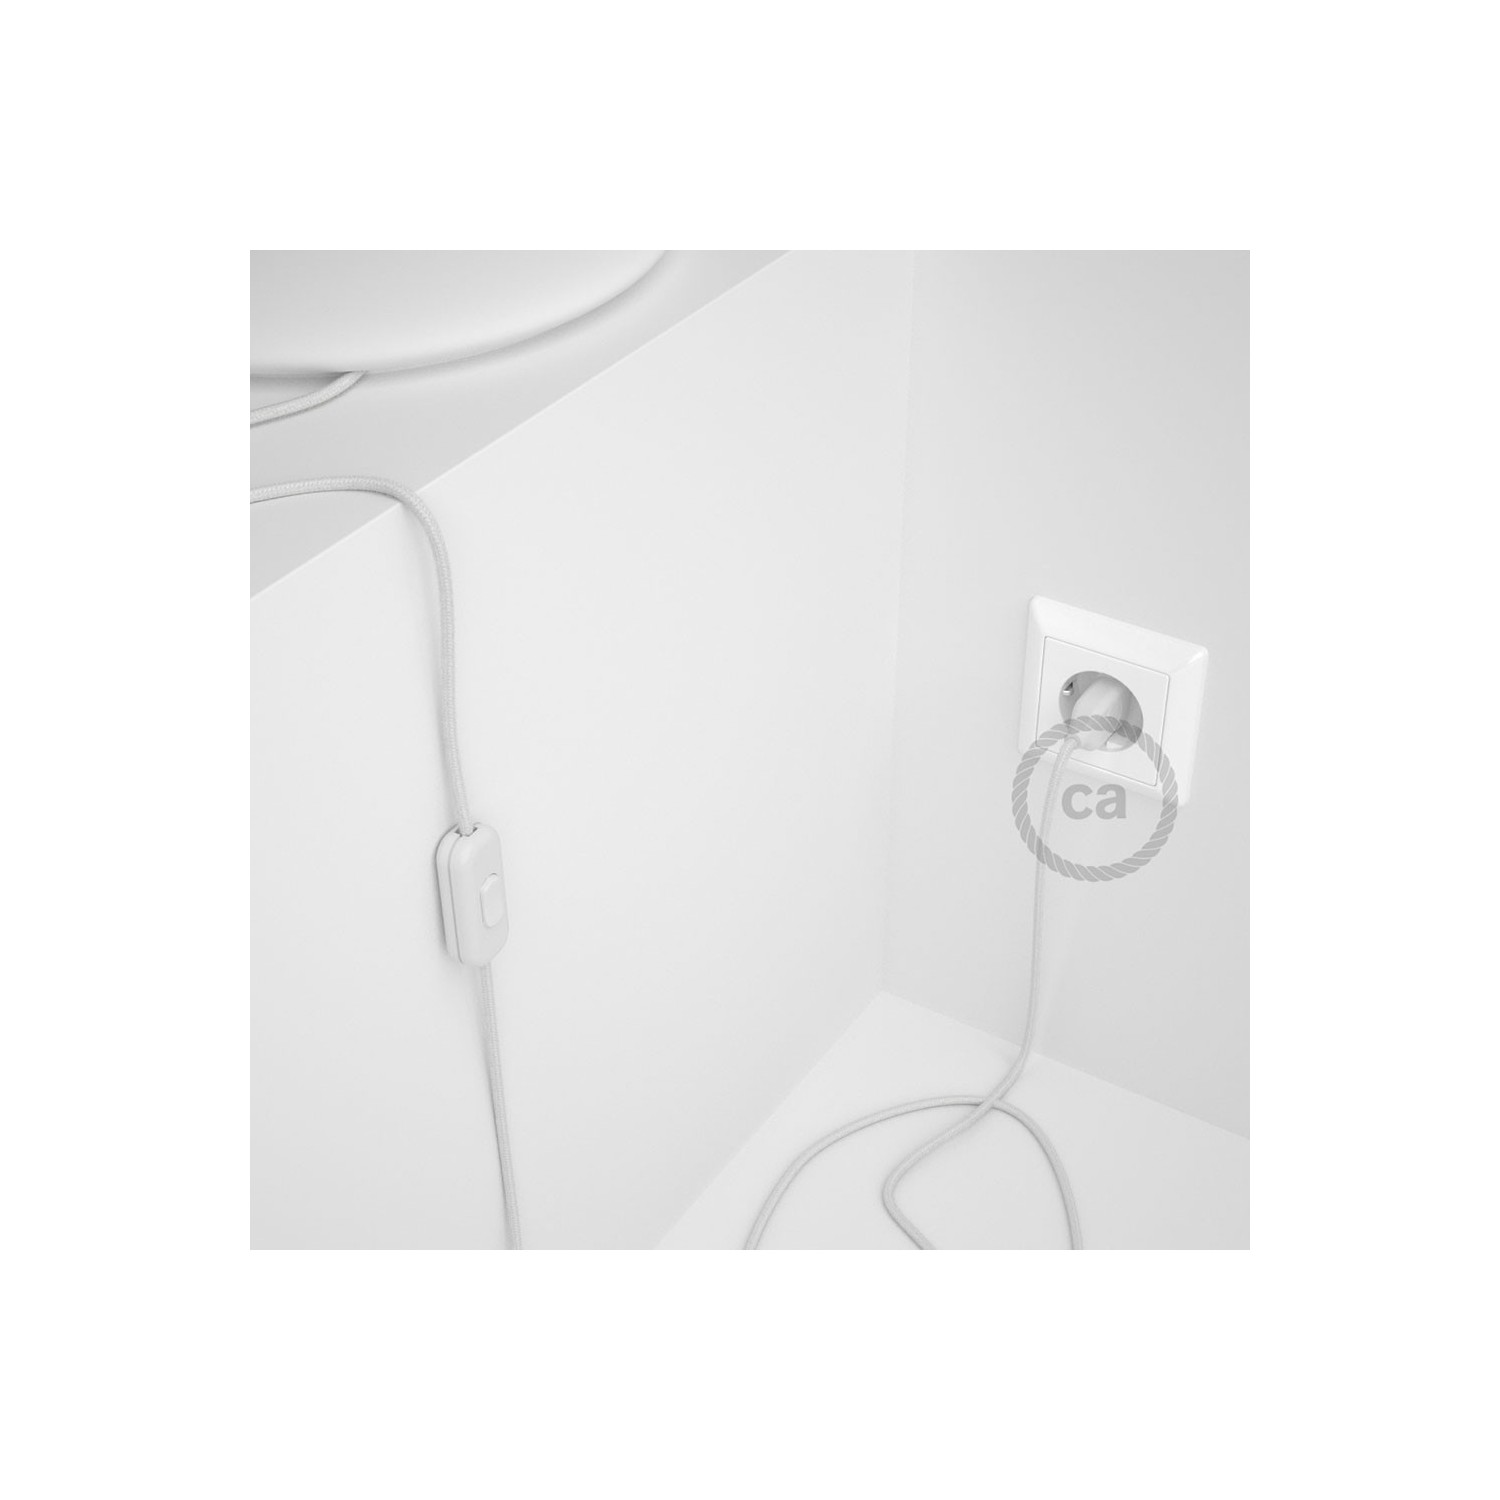 Cablaggio per lampada, cavo RC01 Cotone Bianco 1,80 m. Scegli il colore dell'interruttore e della spina.